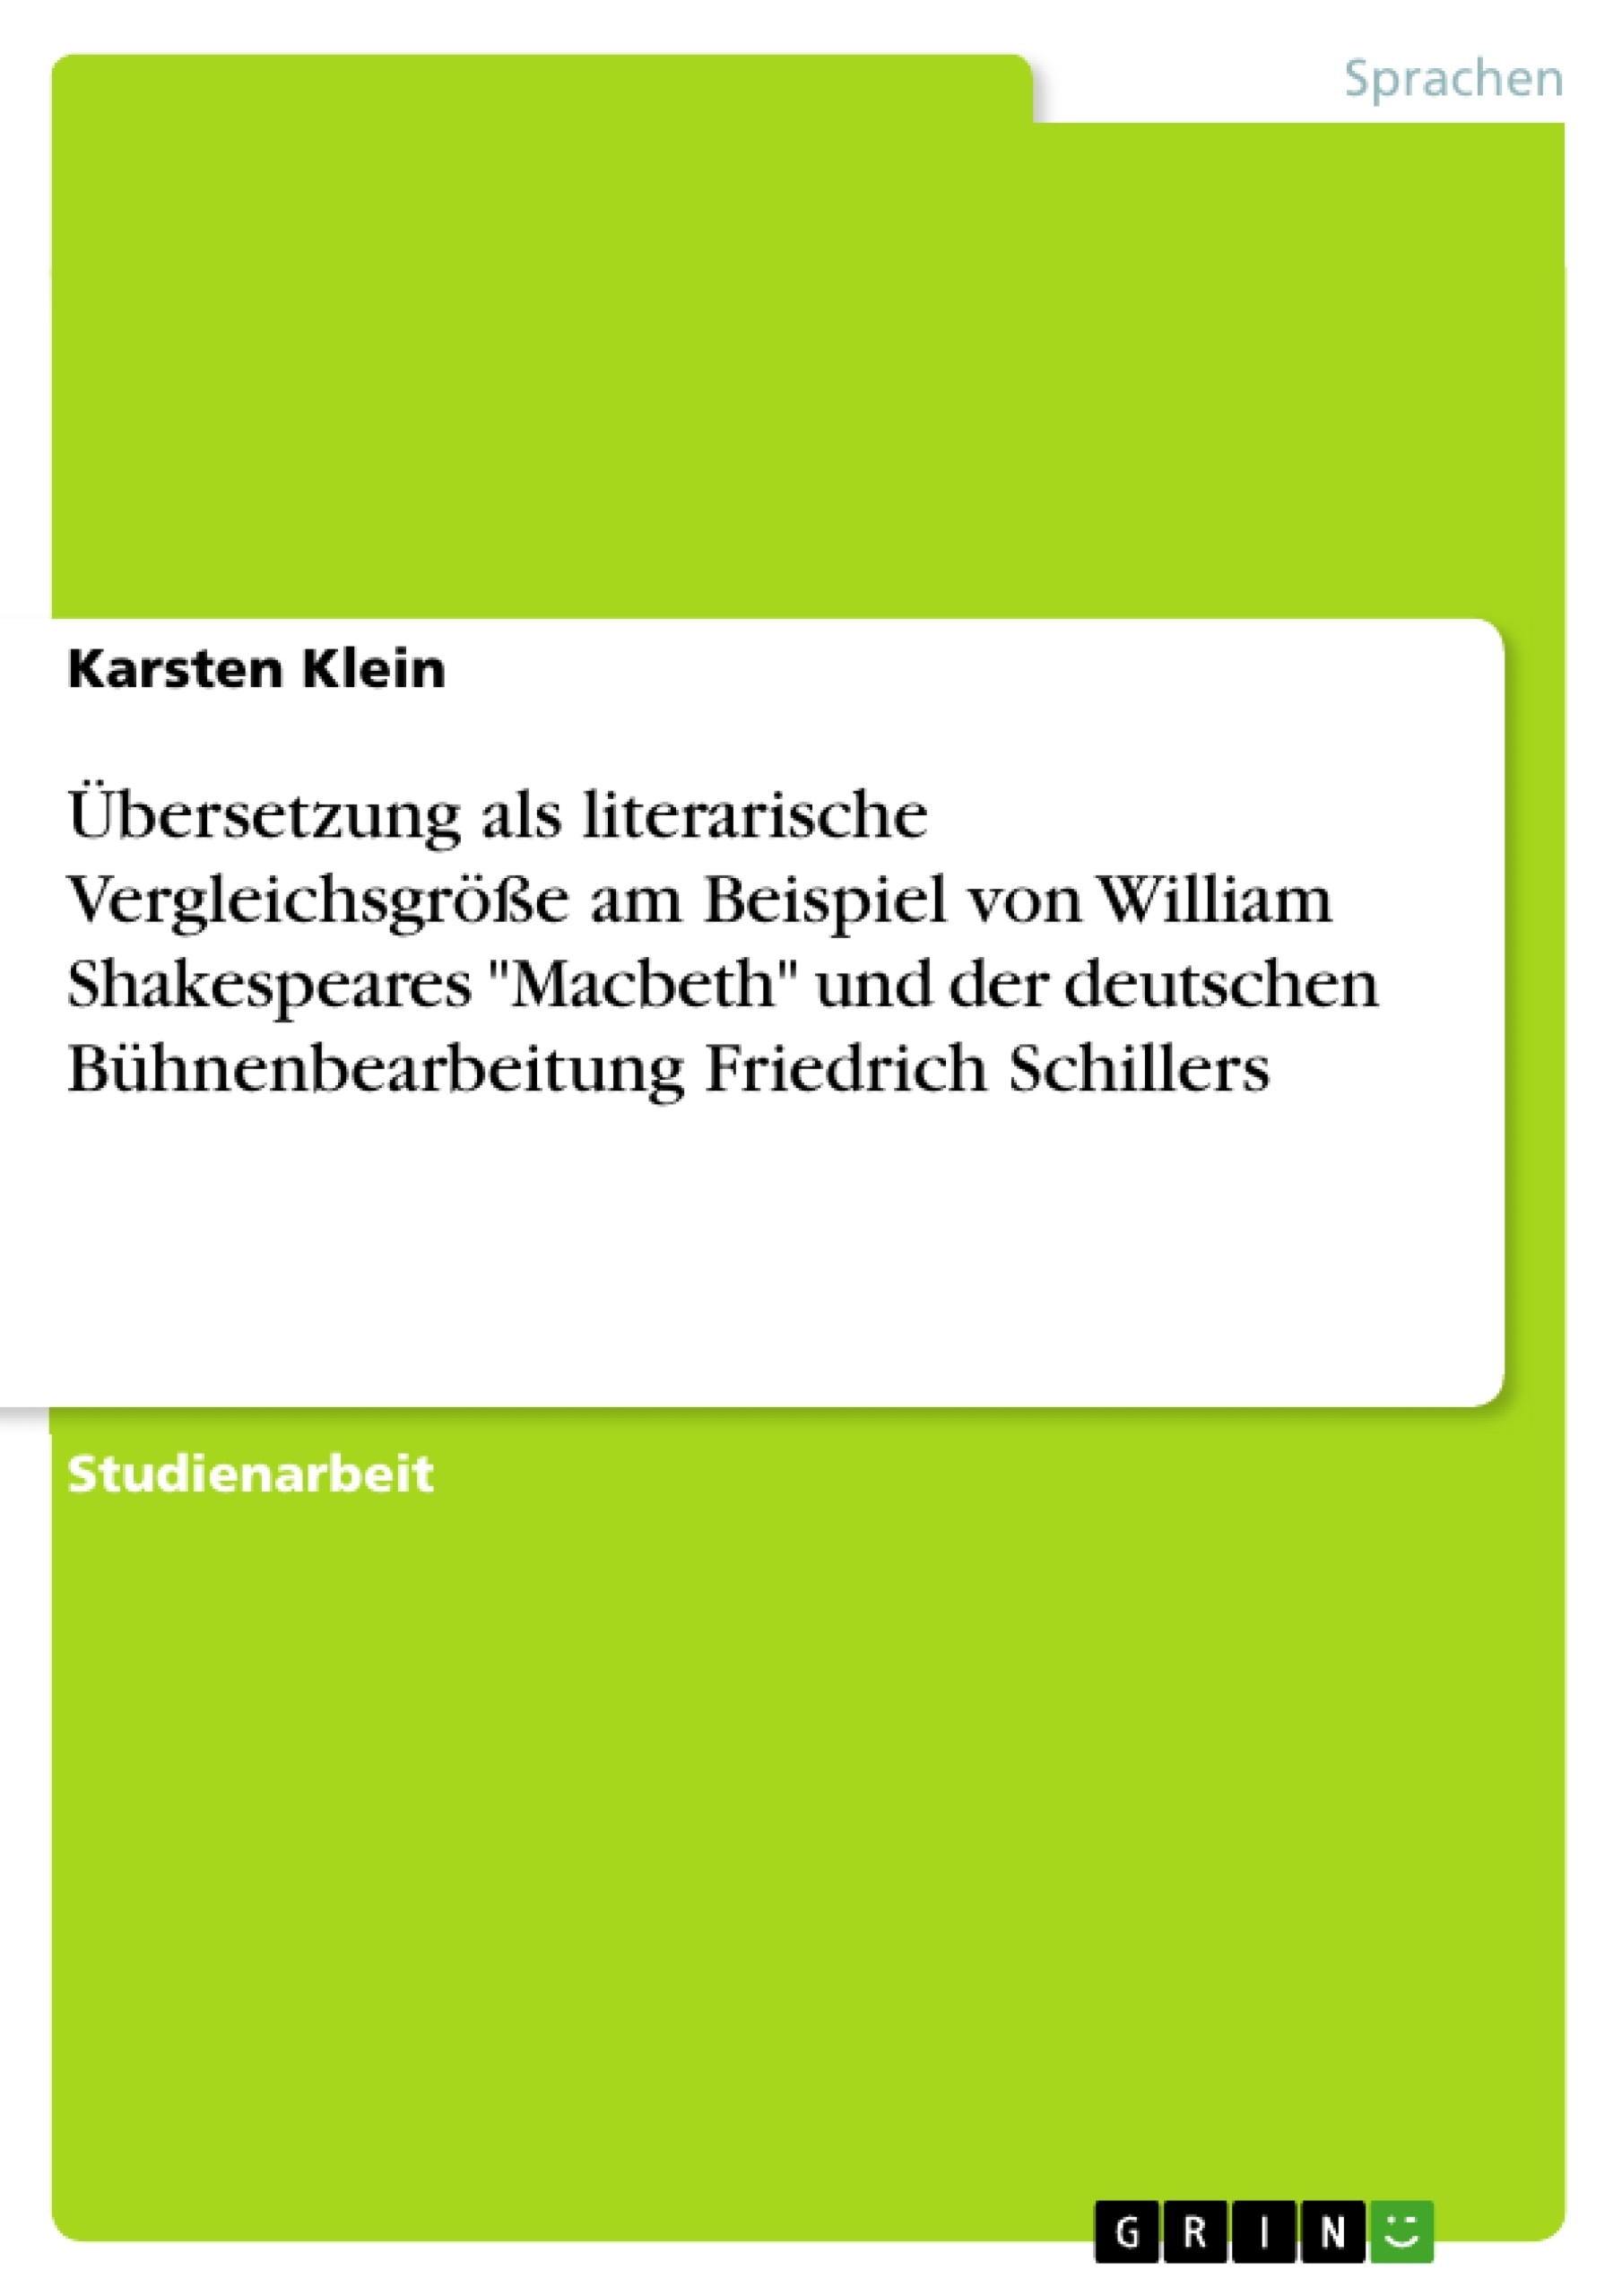 Título: Übersetzung als literarische Vergleichsgröße am Beispiel von William Shakespeares "Macbeth" und der deutschen Bühnenbearbeitung Friedrich Schillers